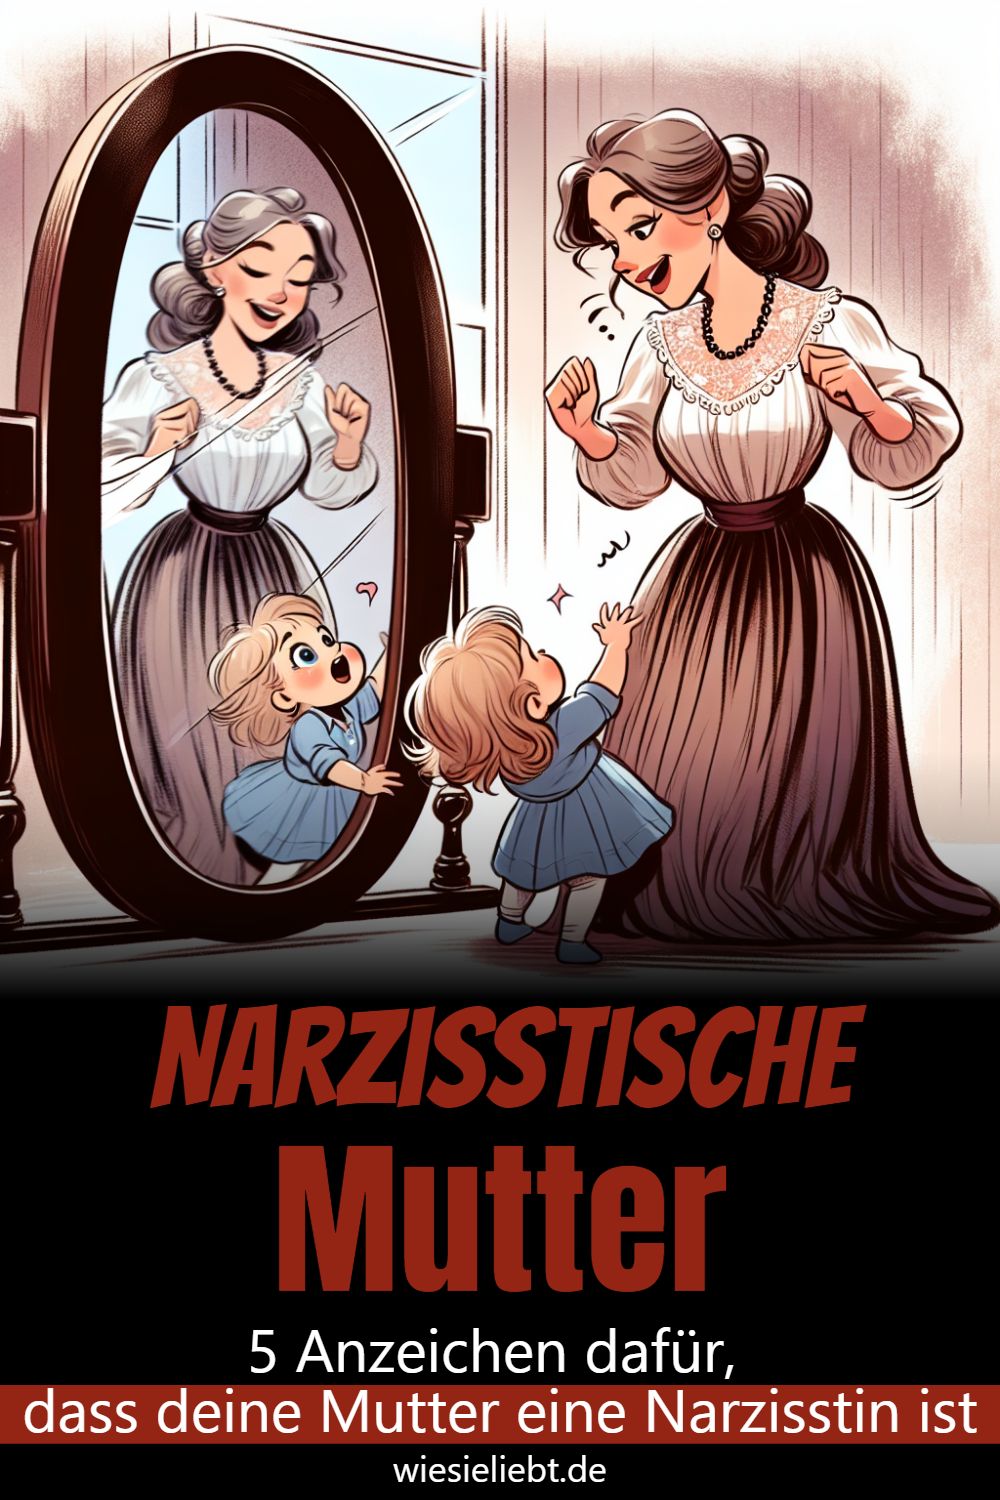 Narzisstische Mutter 5 Anzeichen dafür, dass deine Mutter eine Narzisstin ist